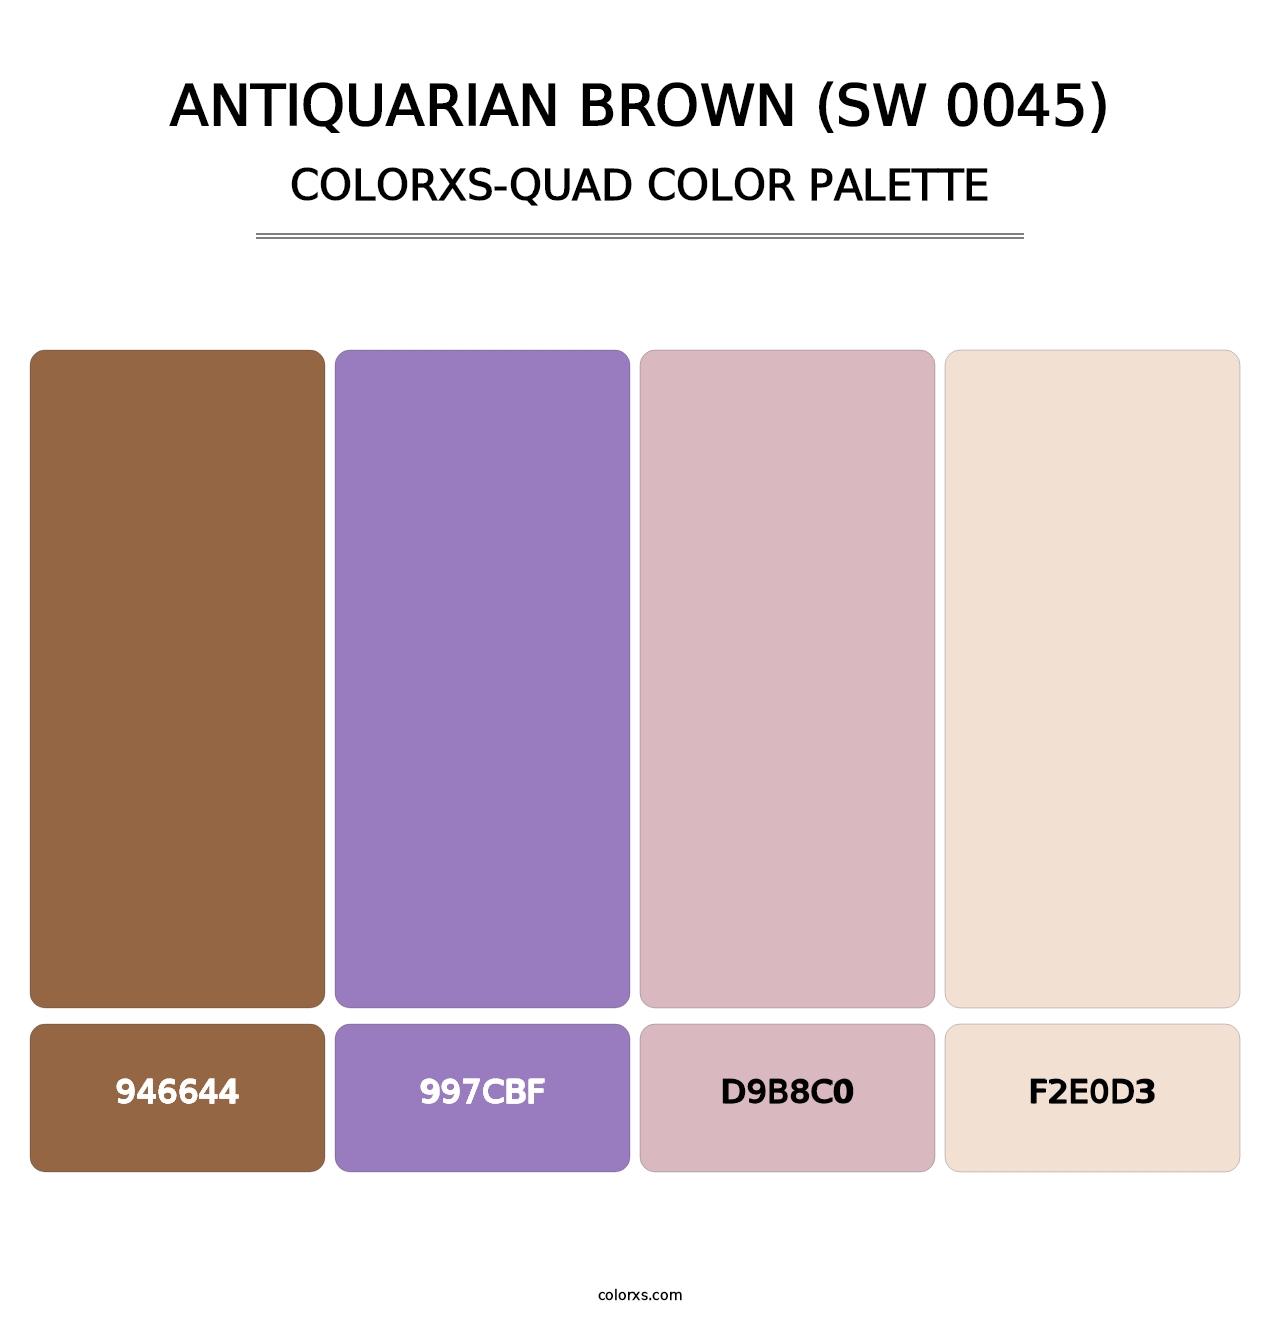 Antiquarian Brown (SW 0045) - Colorxs Quad Palette